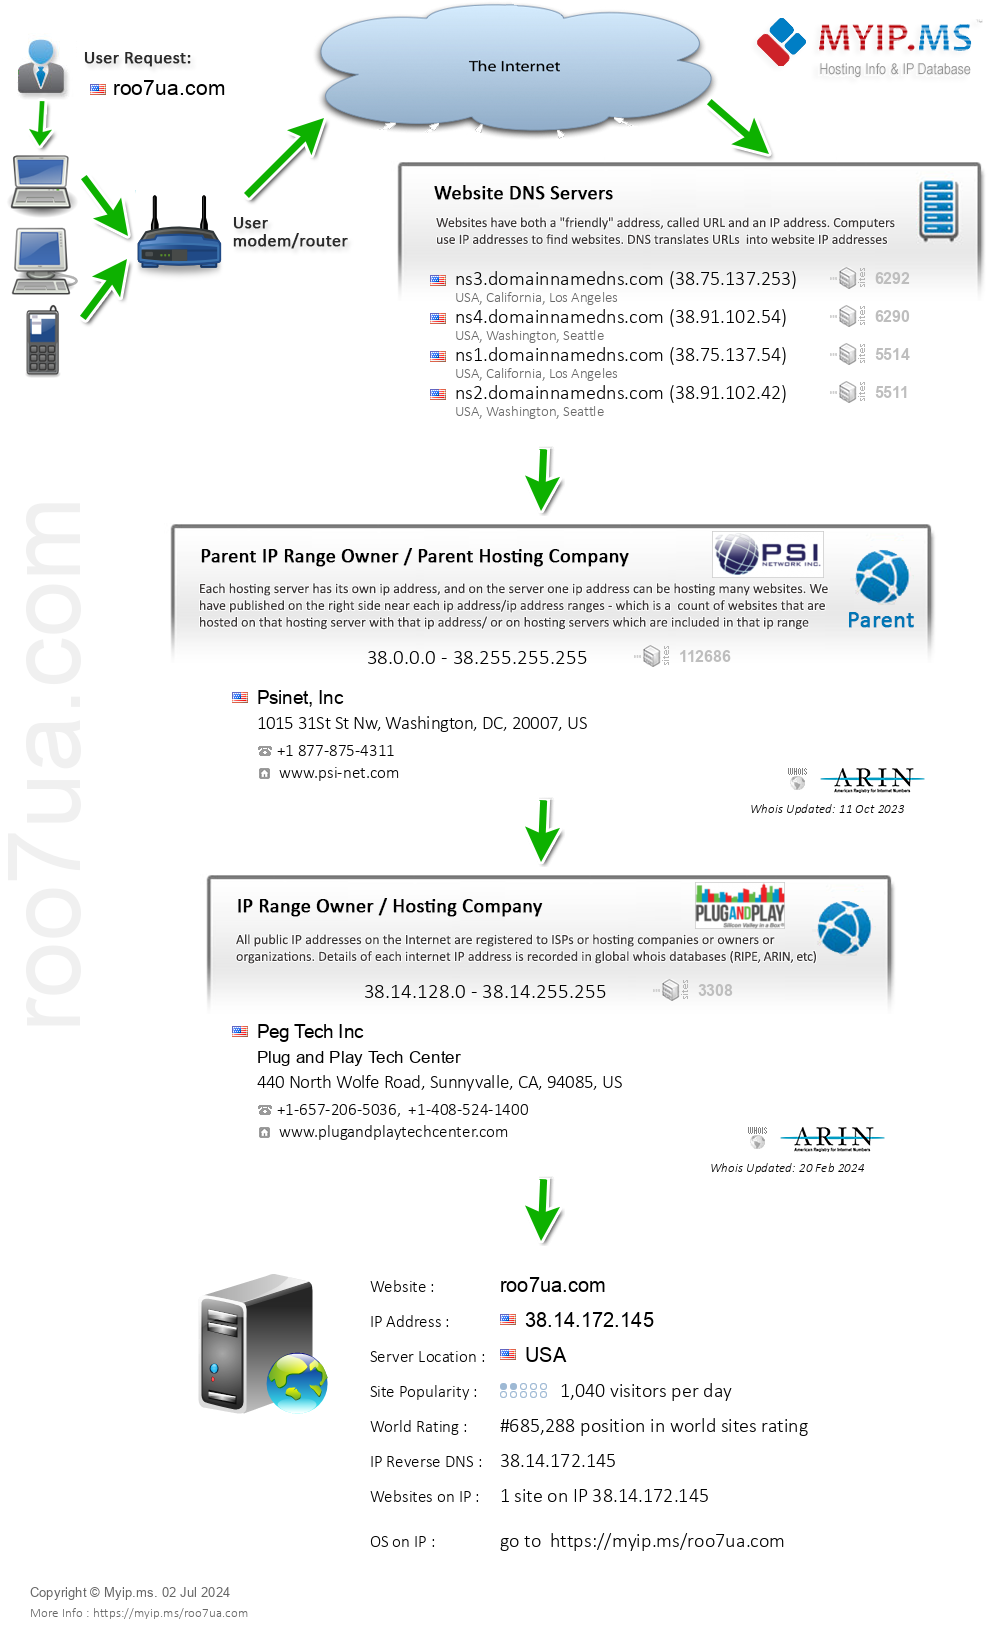 Roo7ua.com - Website Hosting Visual IP Diagram